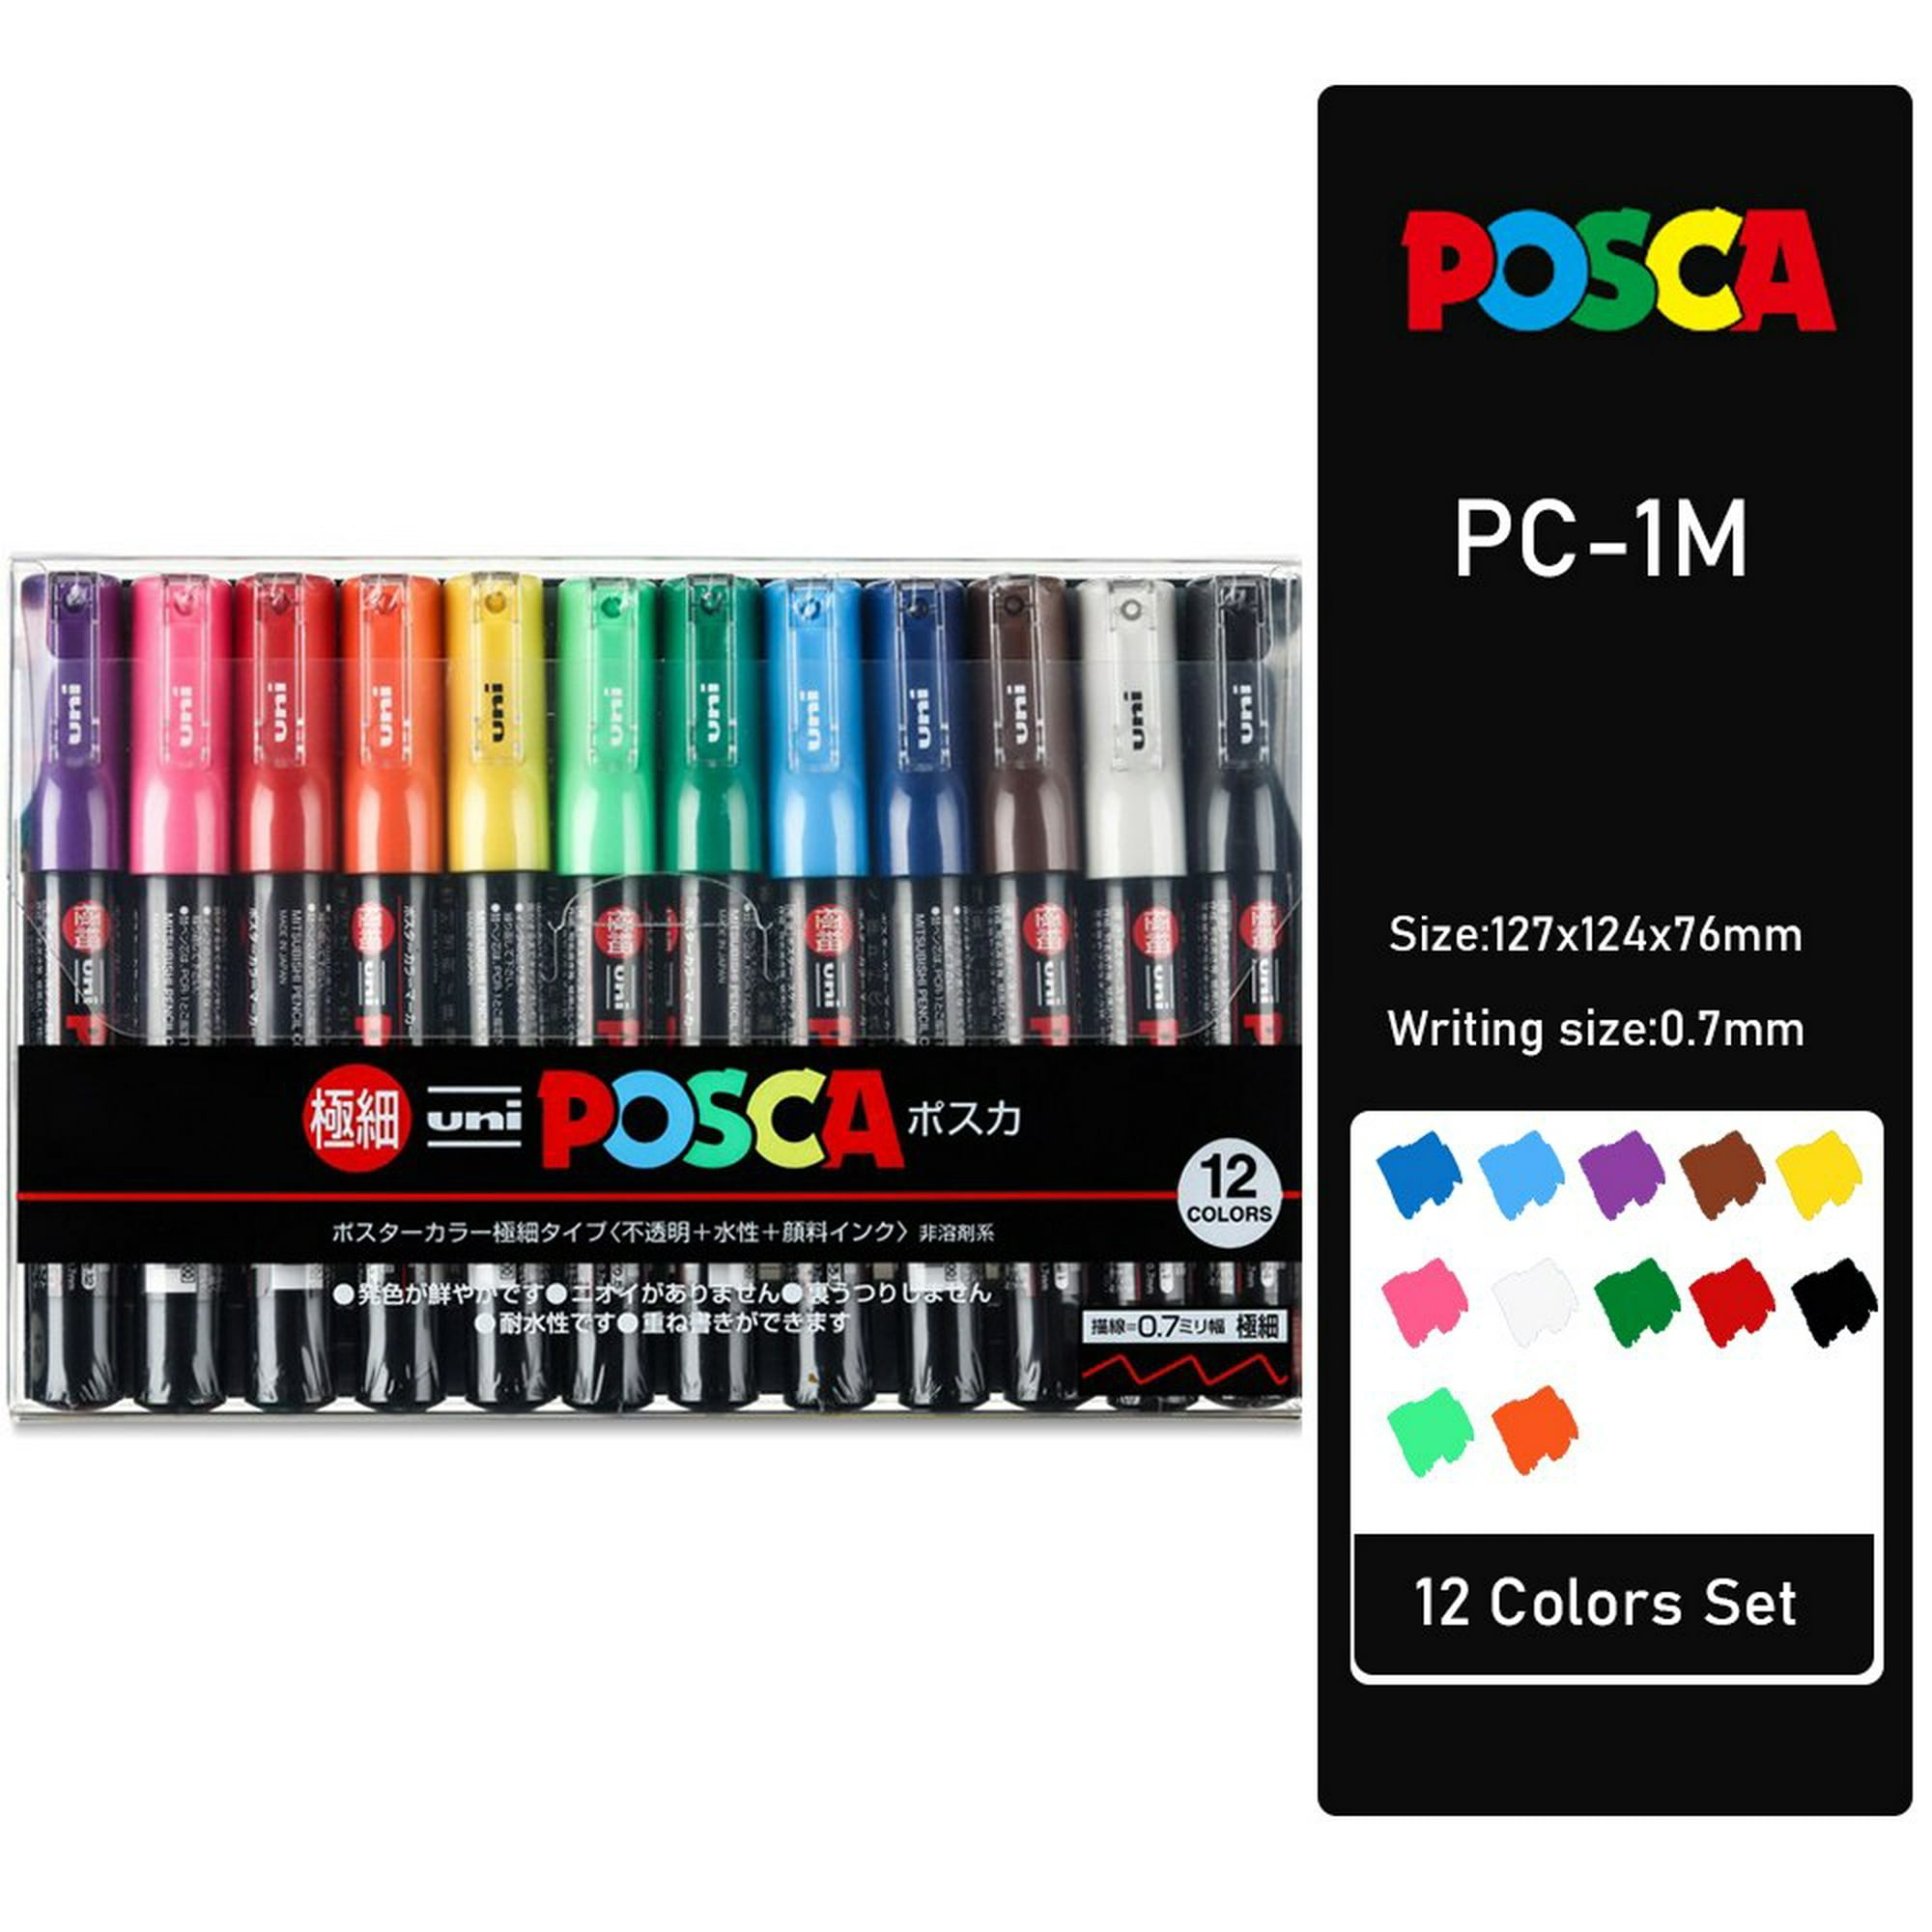 Uni Posca-juego De 12 Colores, Rotuladores De Pintura De Pc-1m